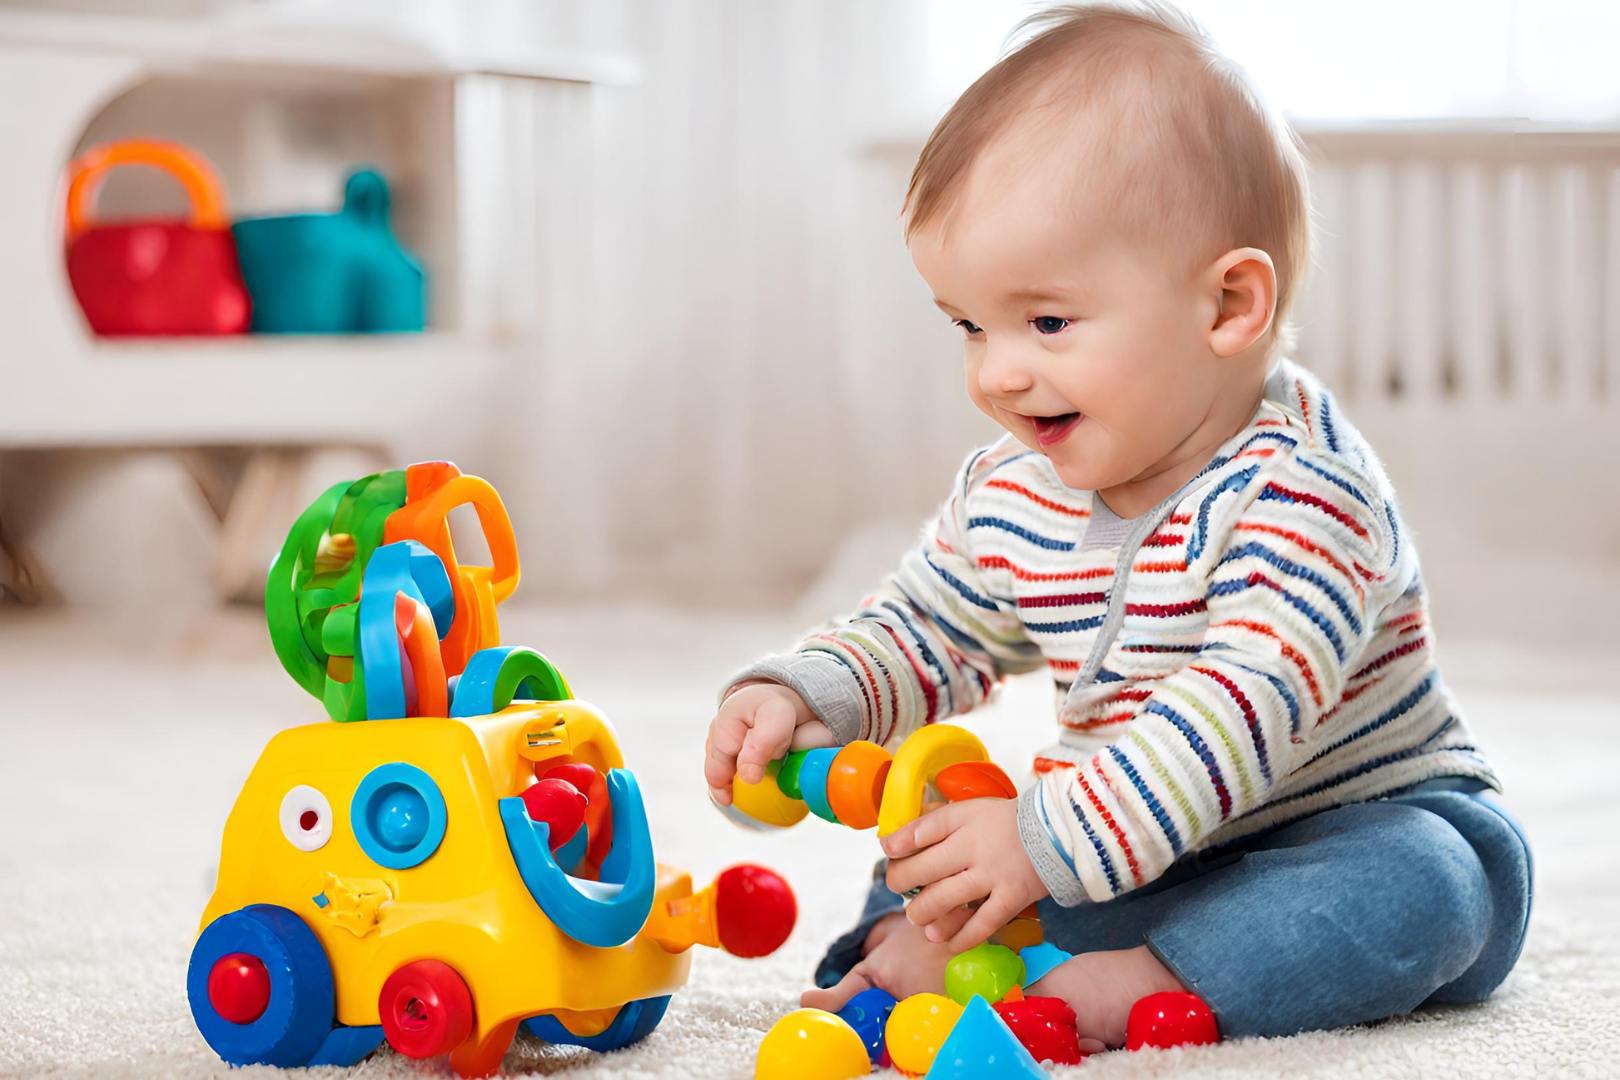 Melhores Brinquedos para Bebê de 8 Meses: 10 Ótimas Opções